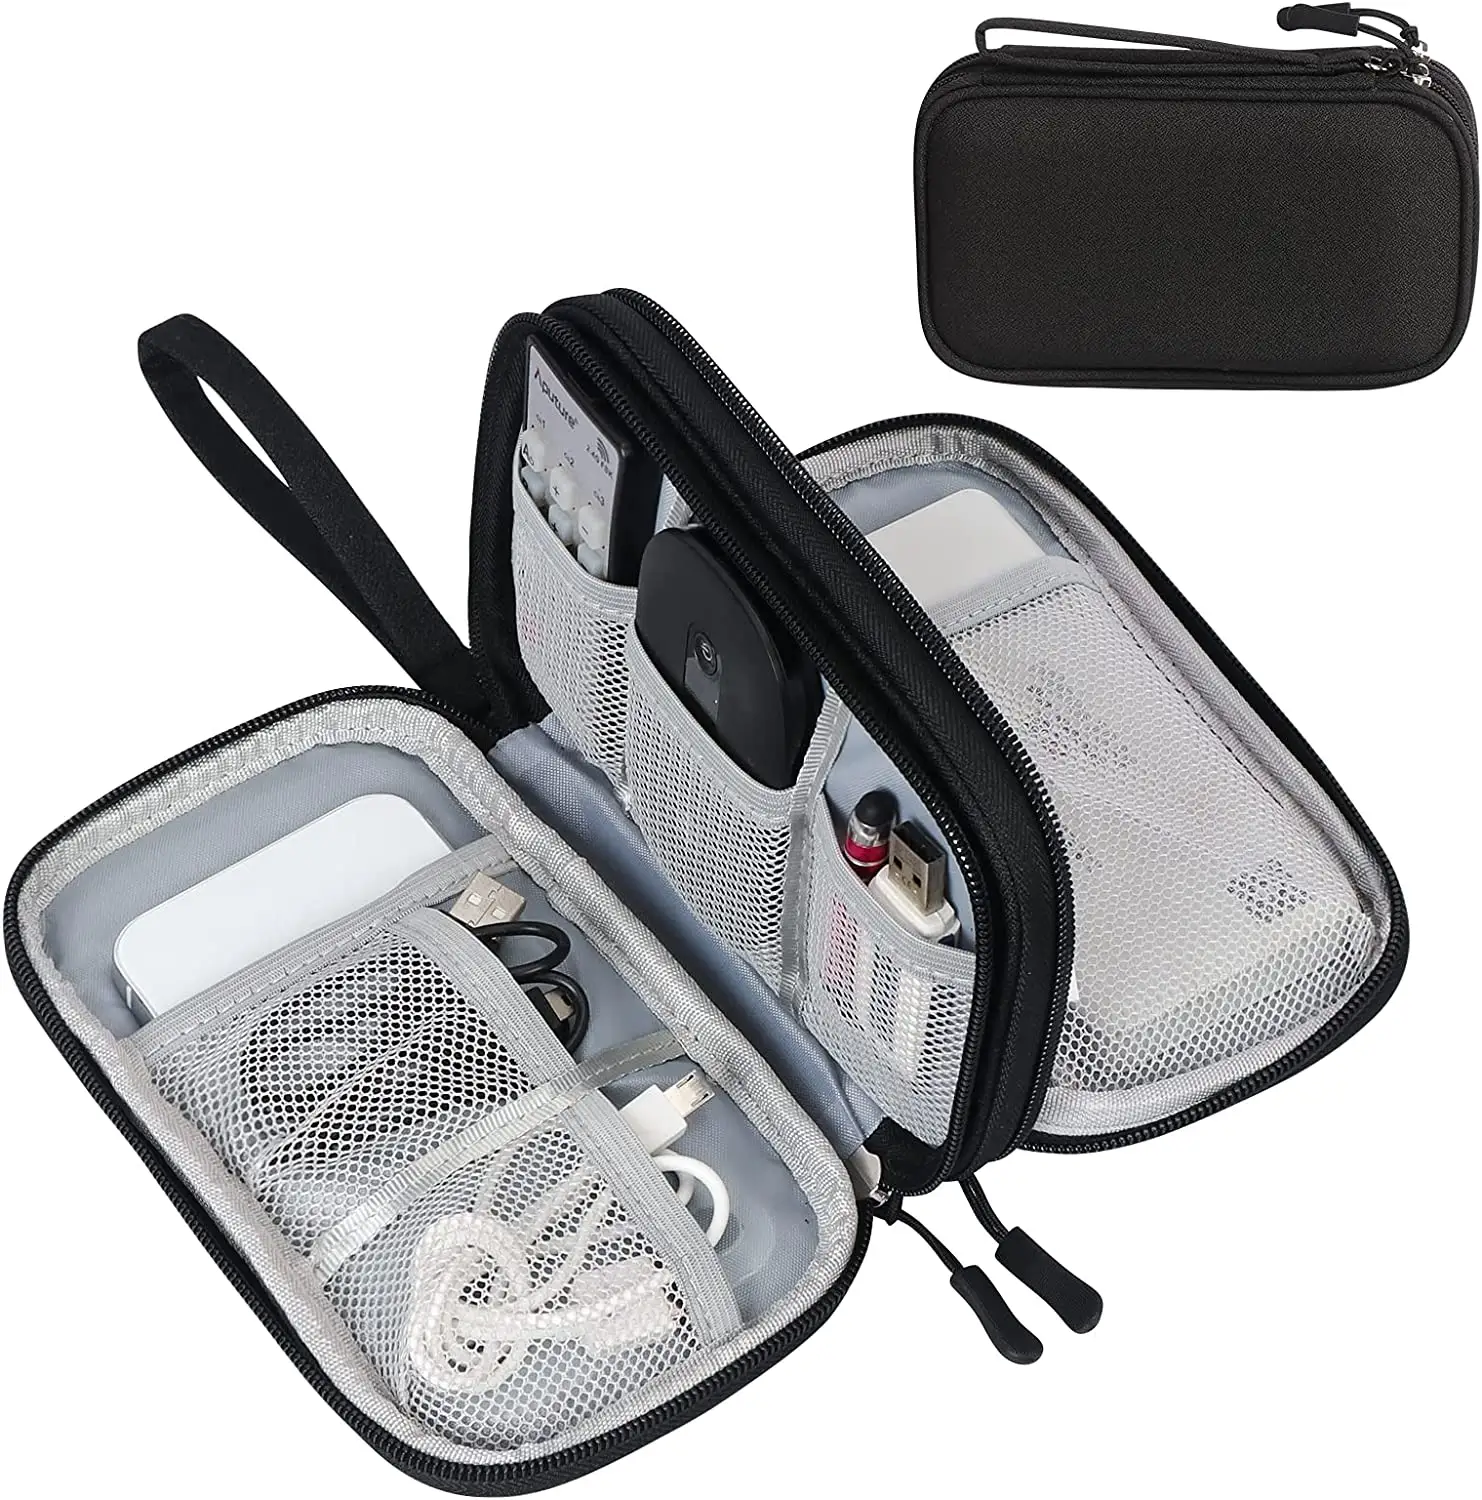 Acessórios eletrônicos Carry Case Camadas duplas impermeáveis portáteis All-in-One Storage Bag Travel Cable Organizer Pouch